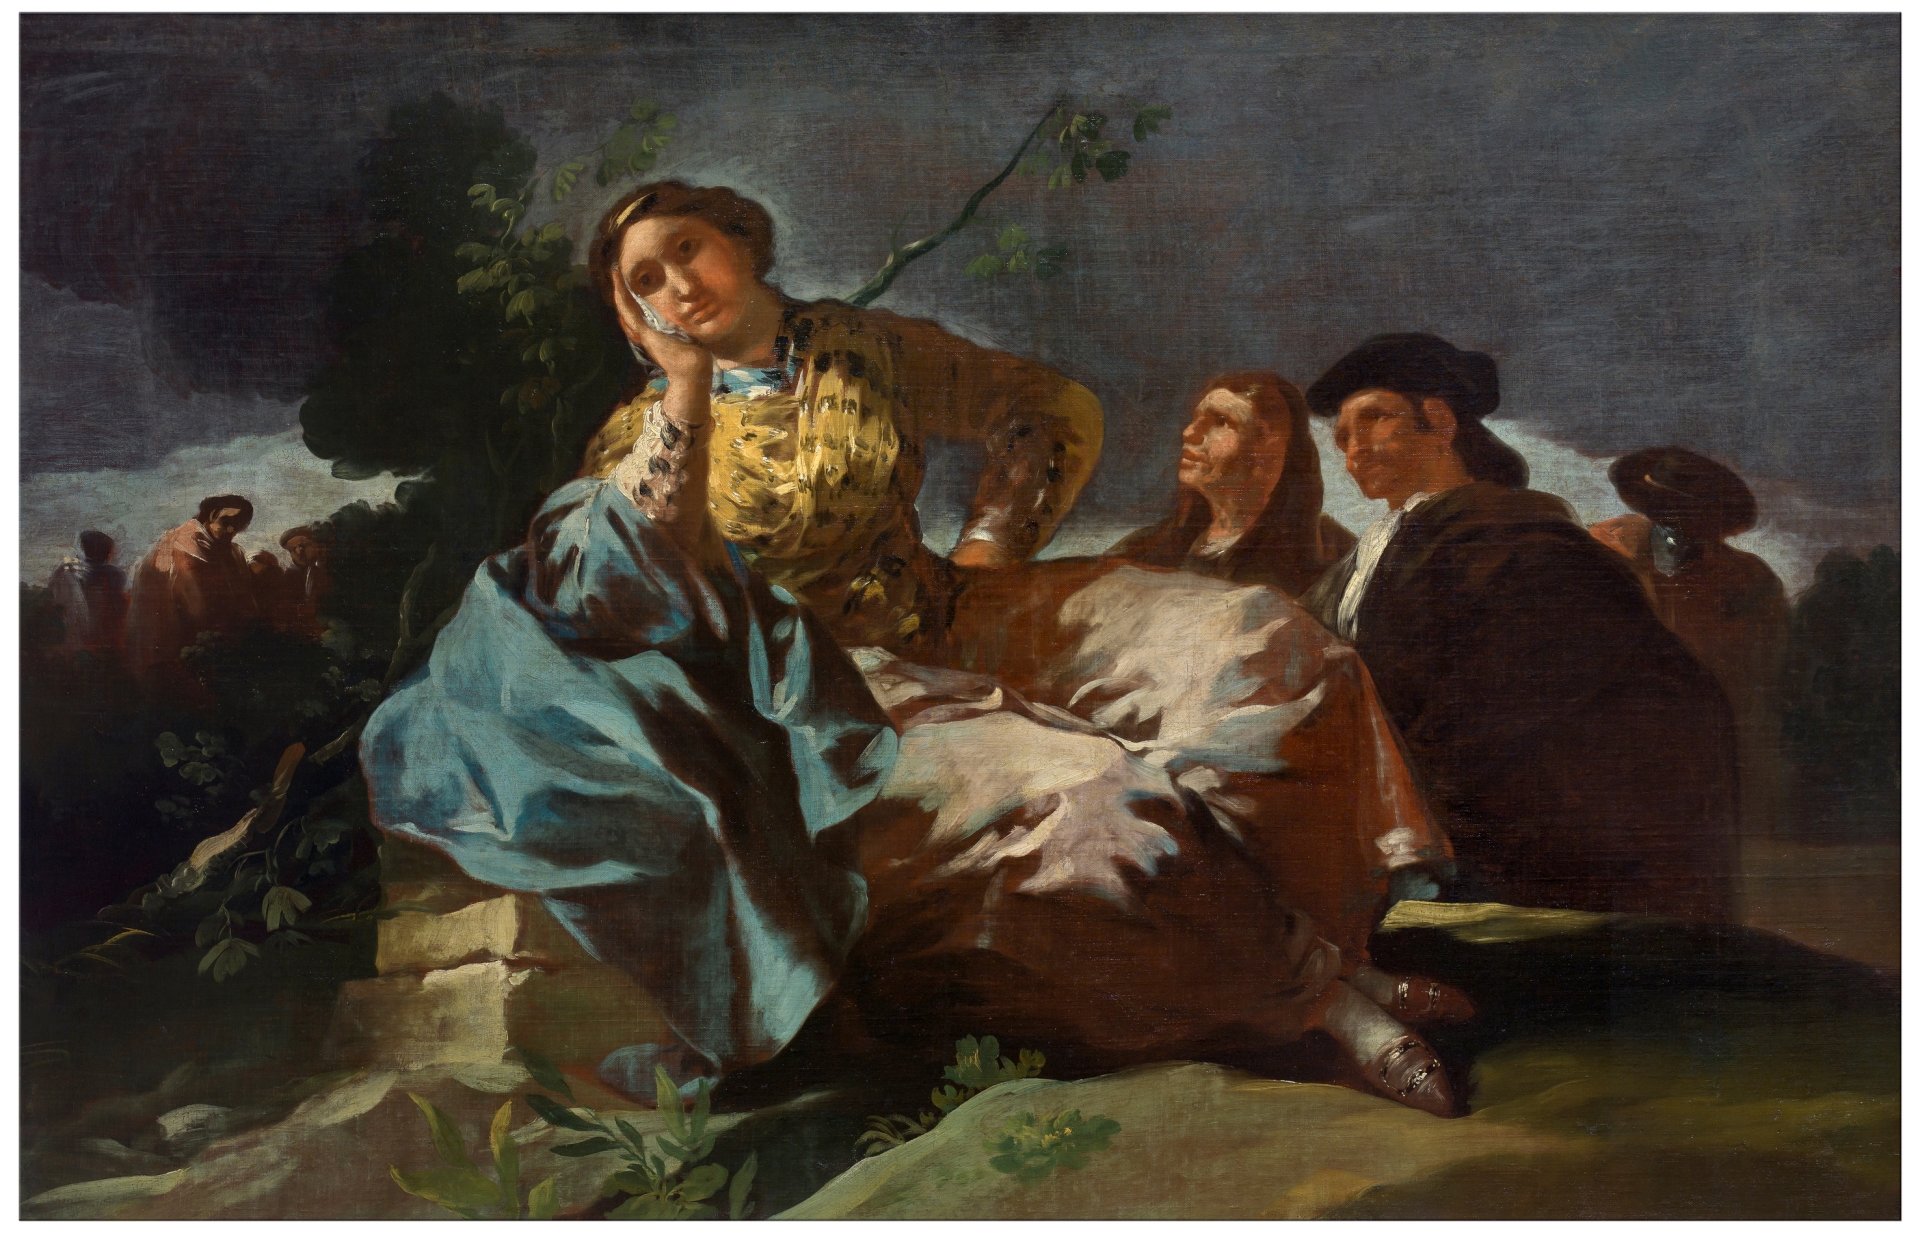 La cita, de Francisco de Goya